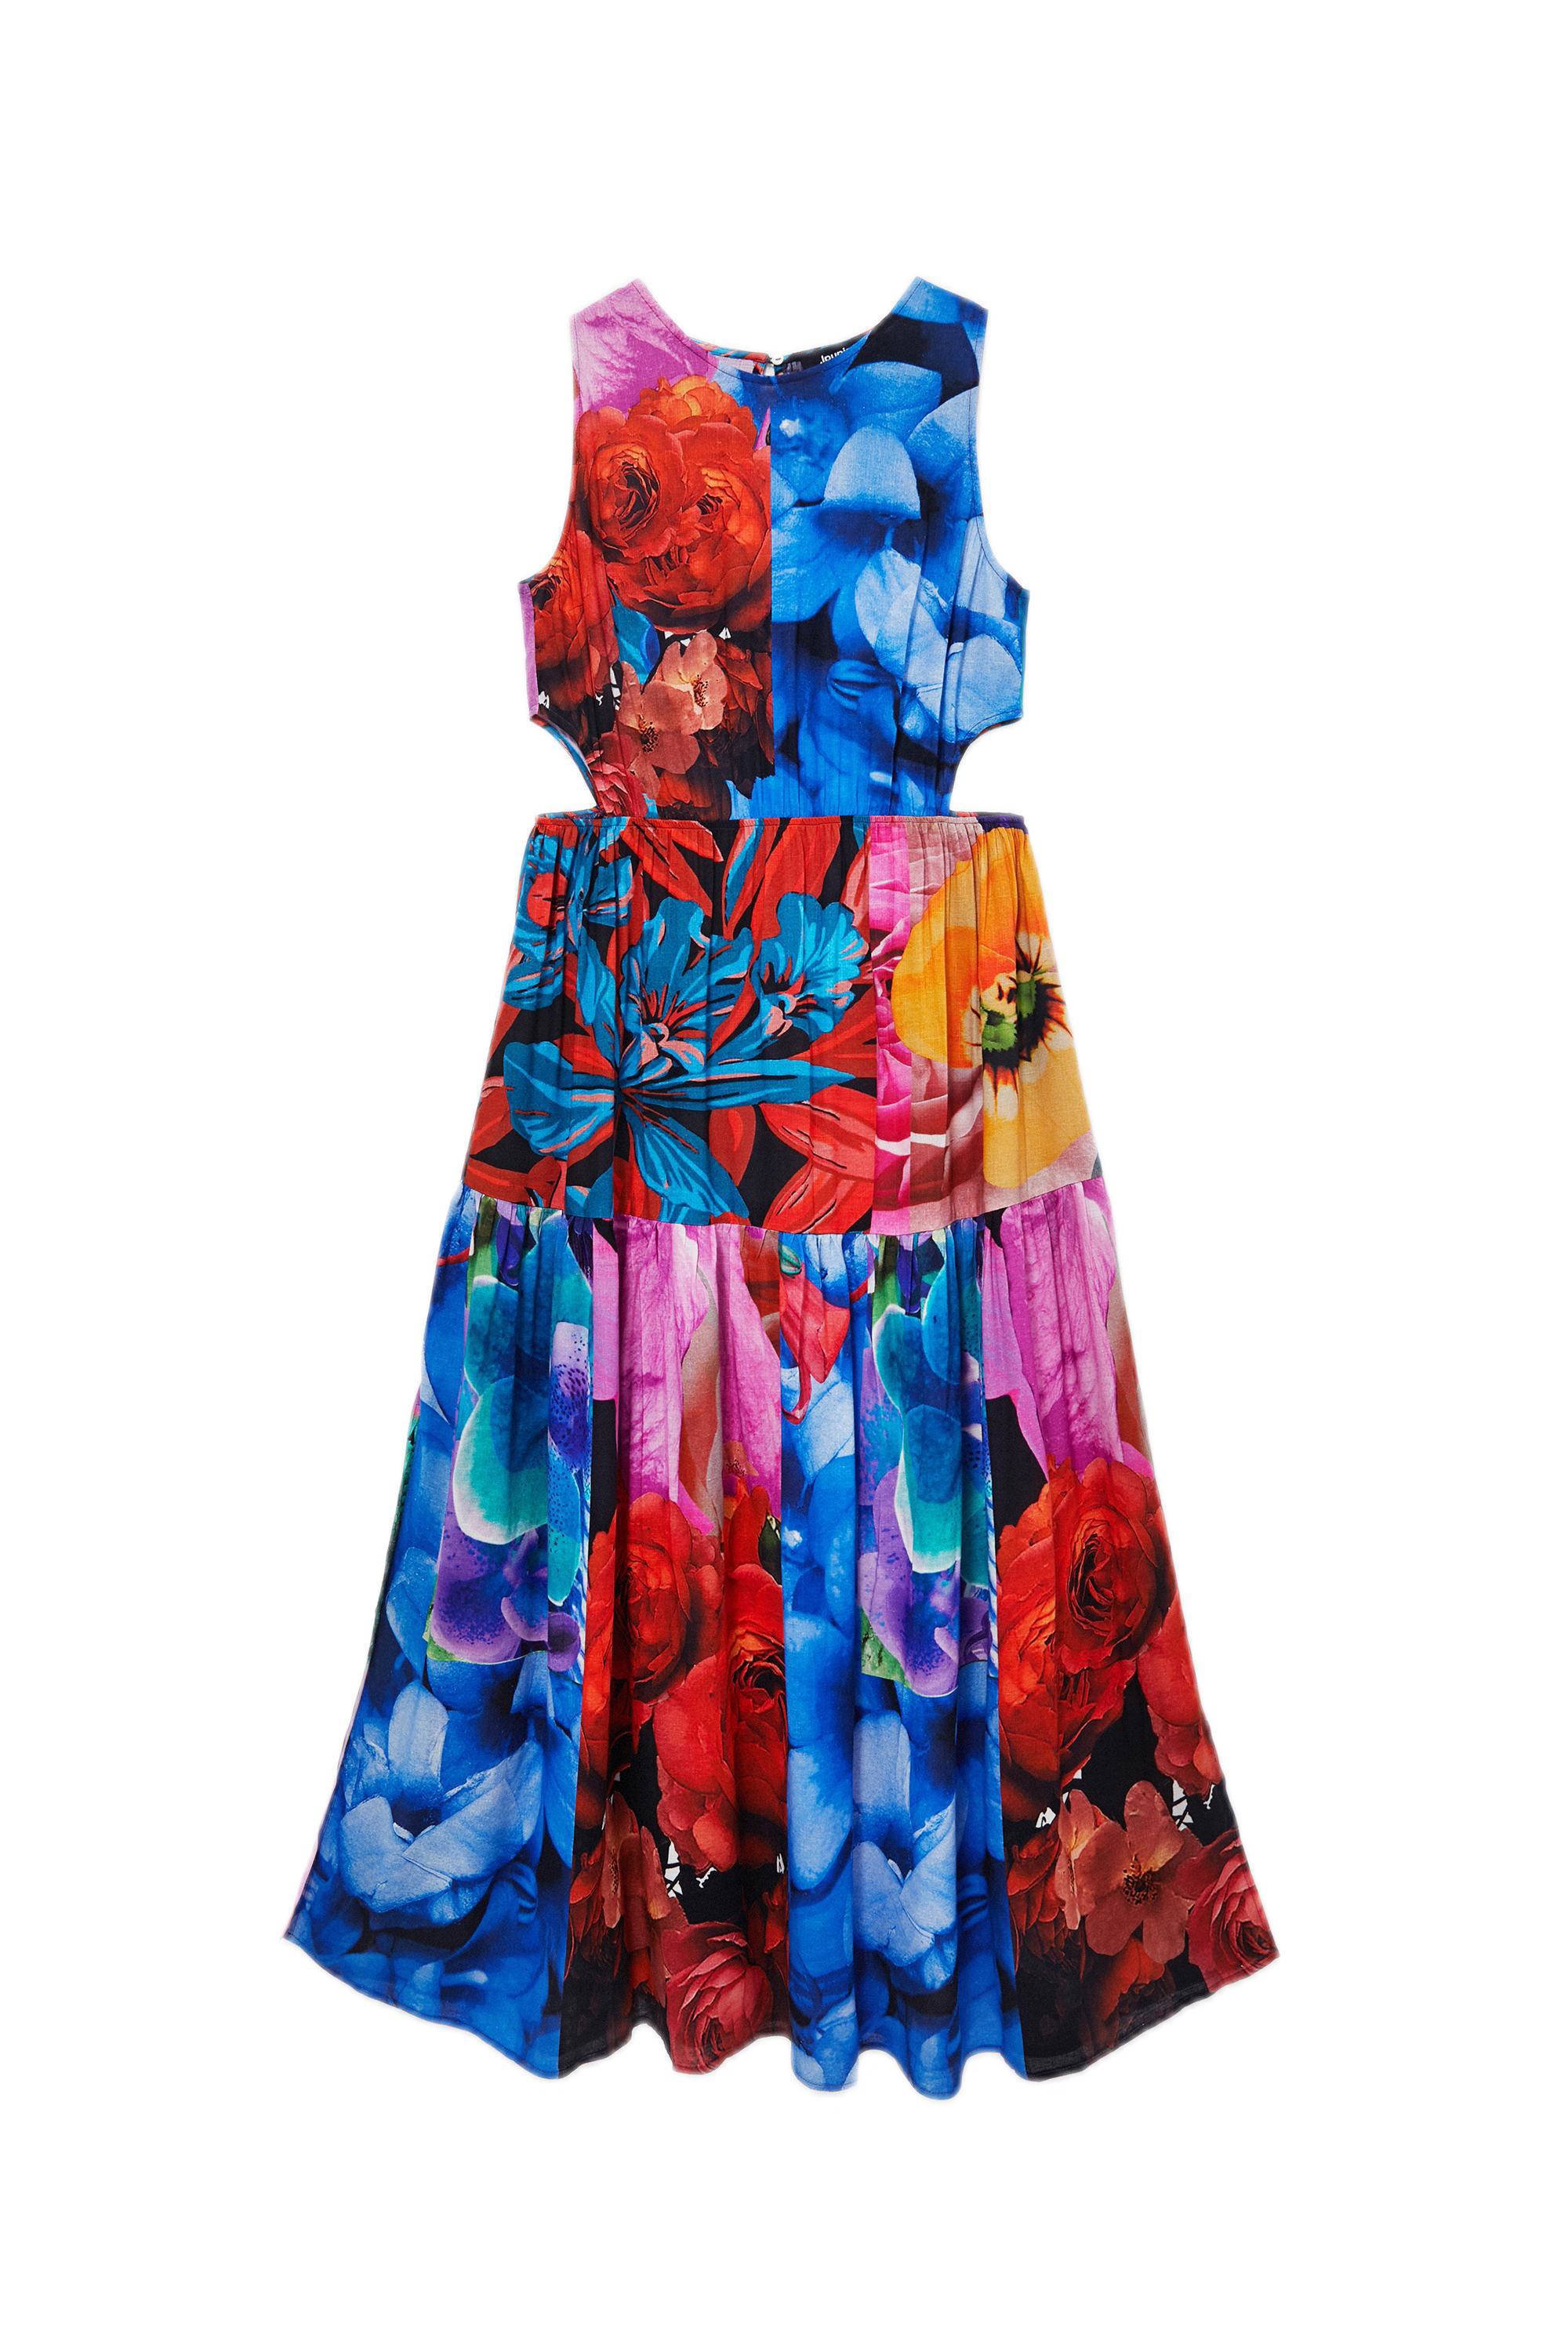 Desigual gebloemde maxi jurk rood/blauw/roze online kopen